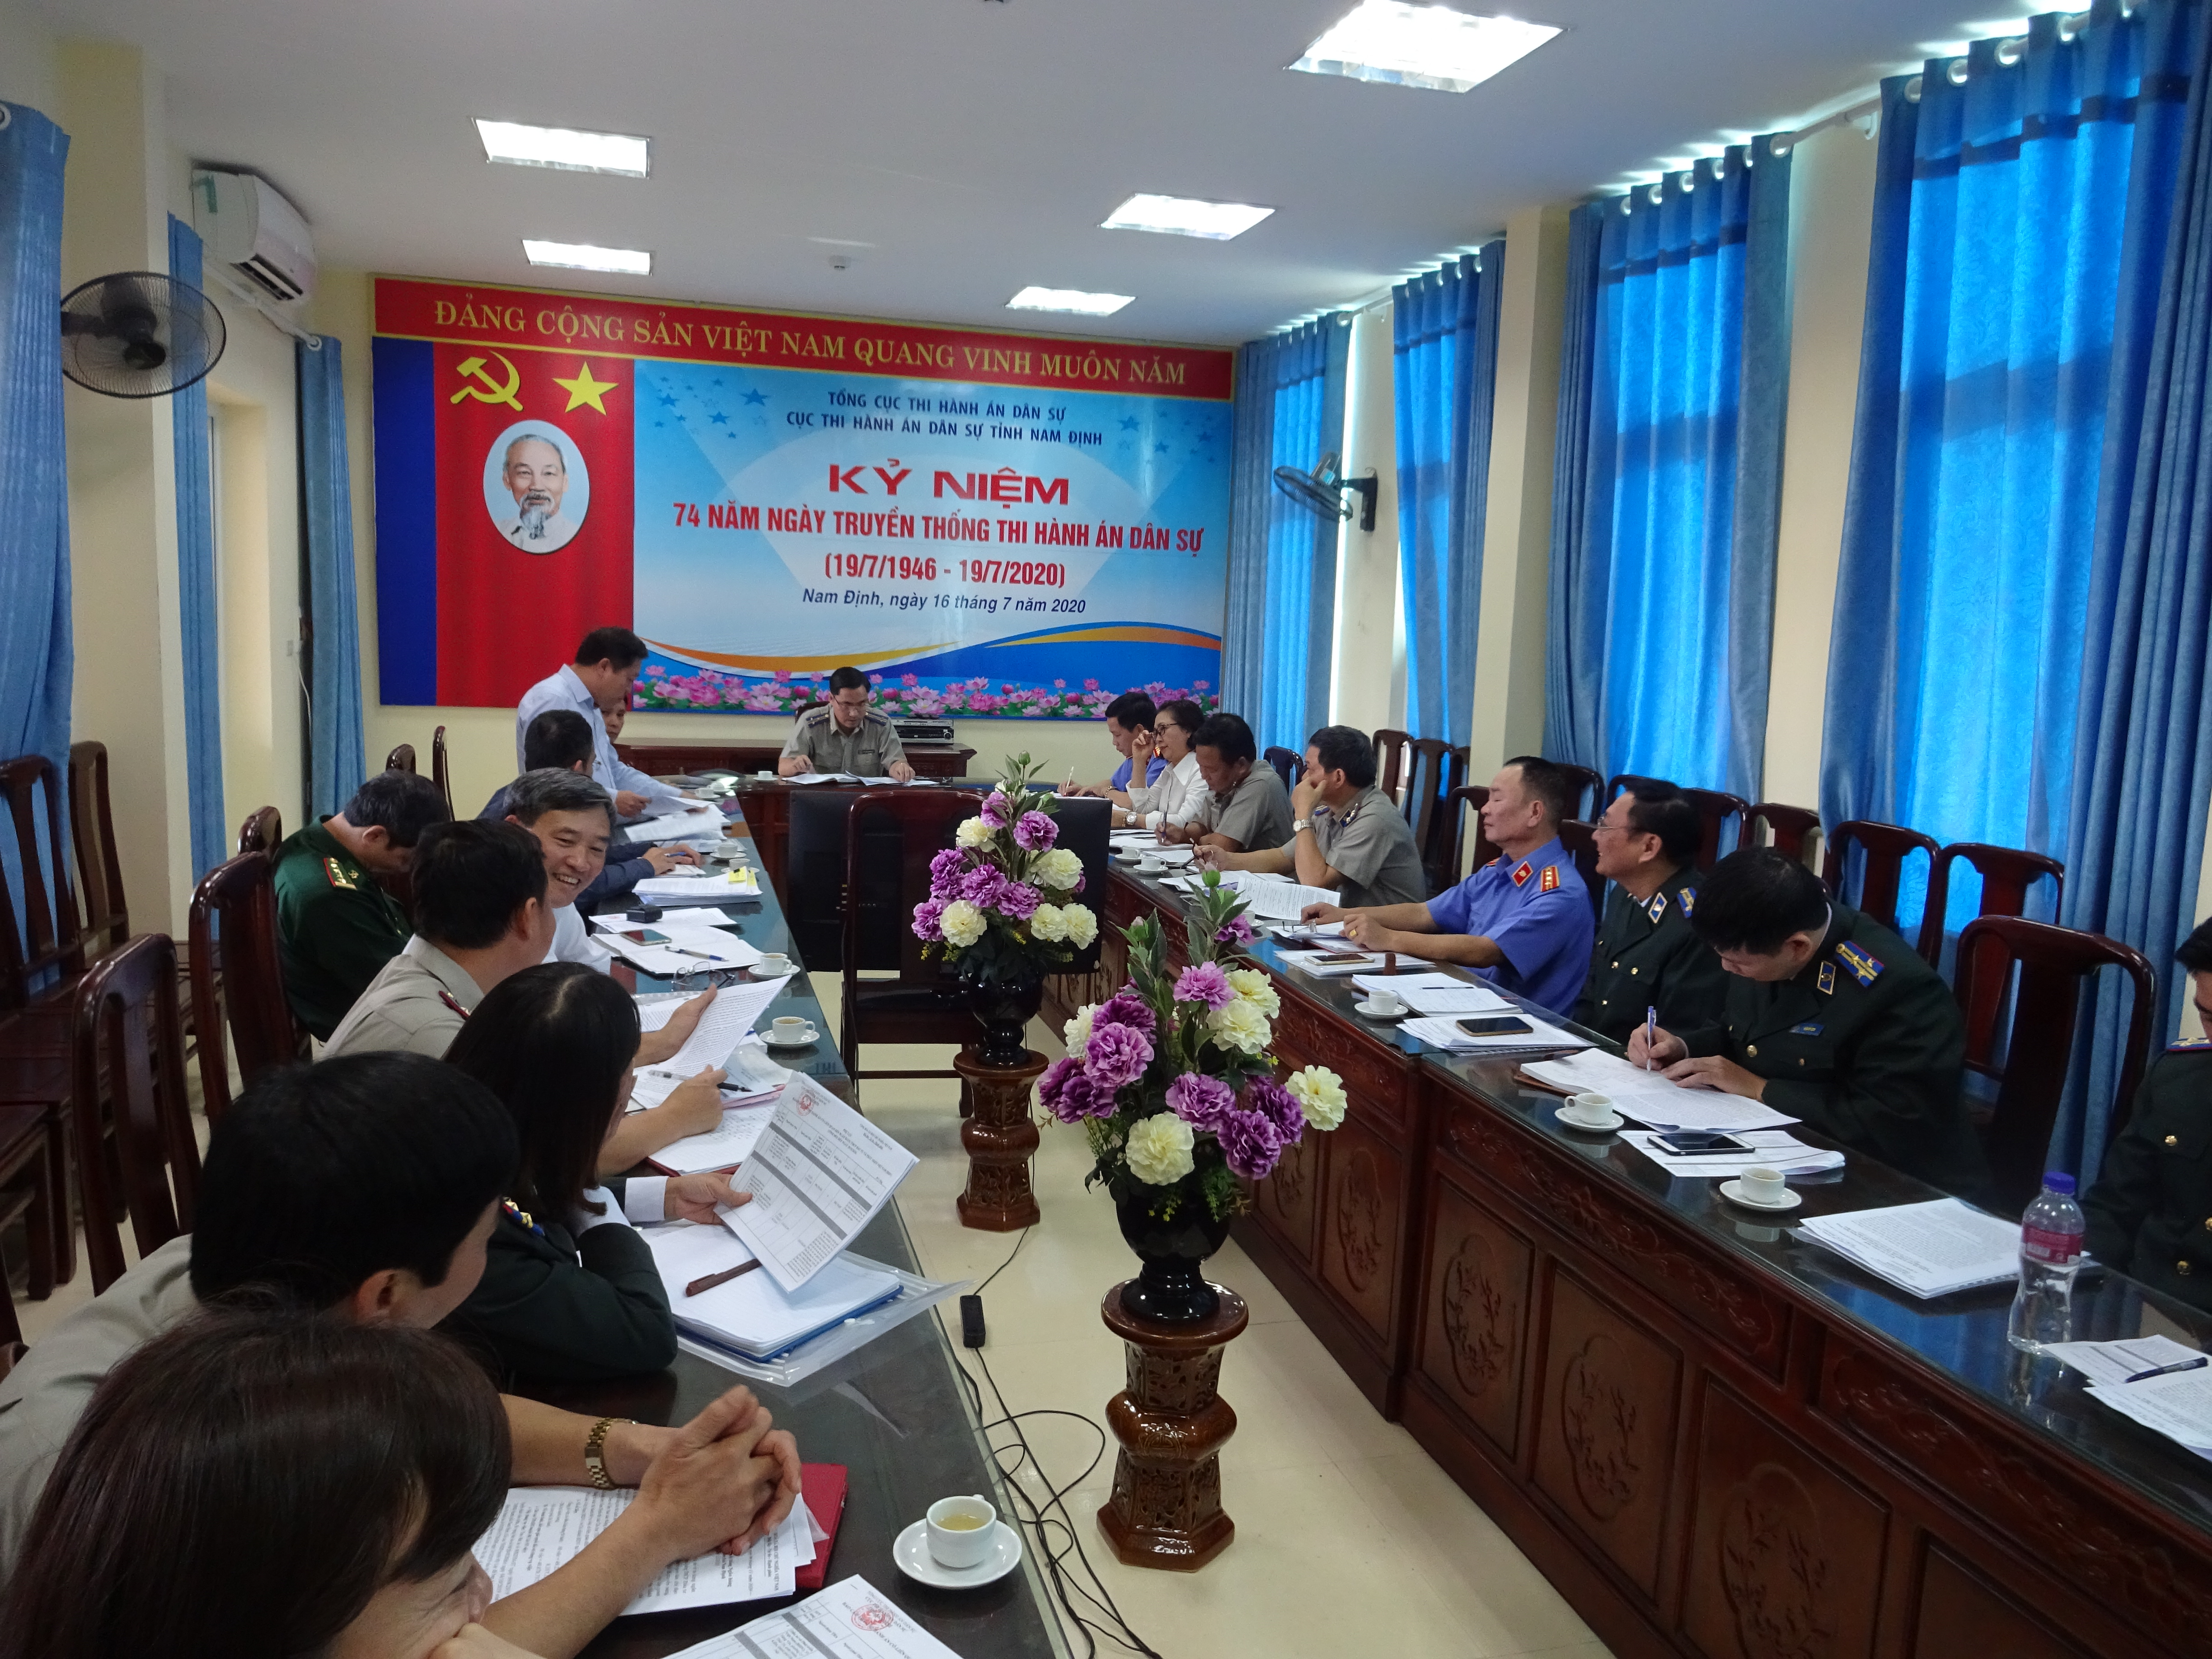 Cục Thi hành án dân sự tỉnh và Ngân hàng Ngân hàng TMCP Đầu tư và Phát triển Việt Nam làm việc về công tác thi hành án tín dụng, ngân hàng trên địa bàn tỉnh Nam Định